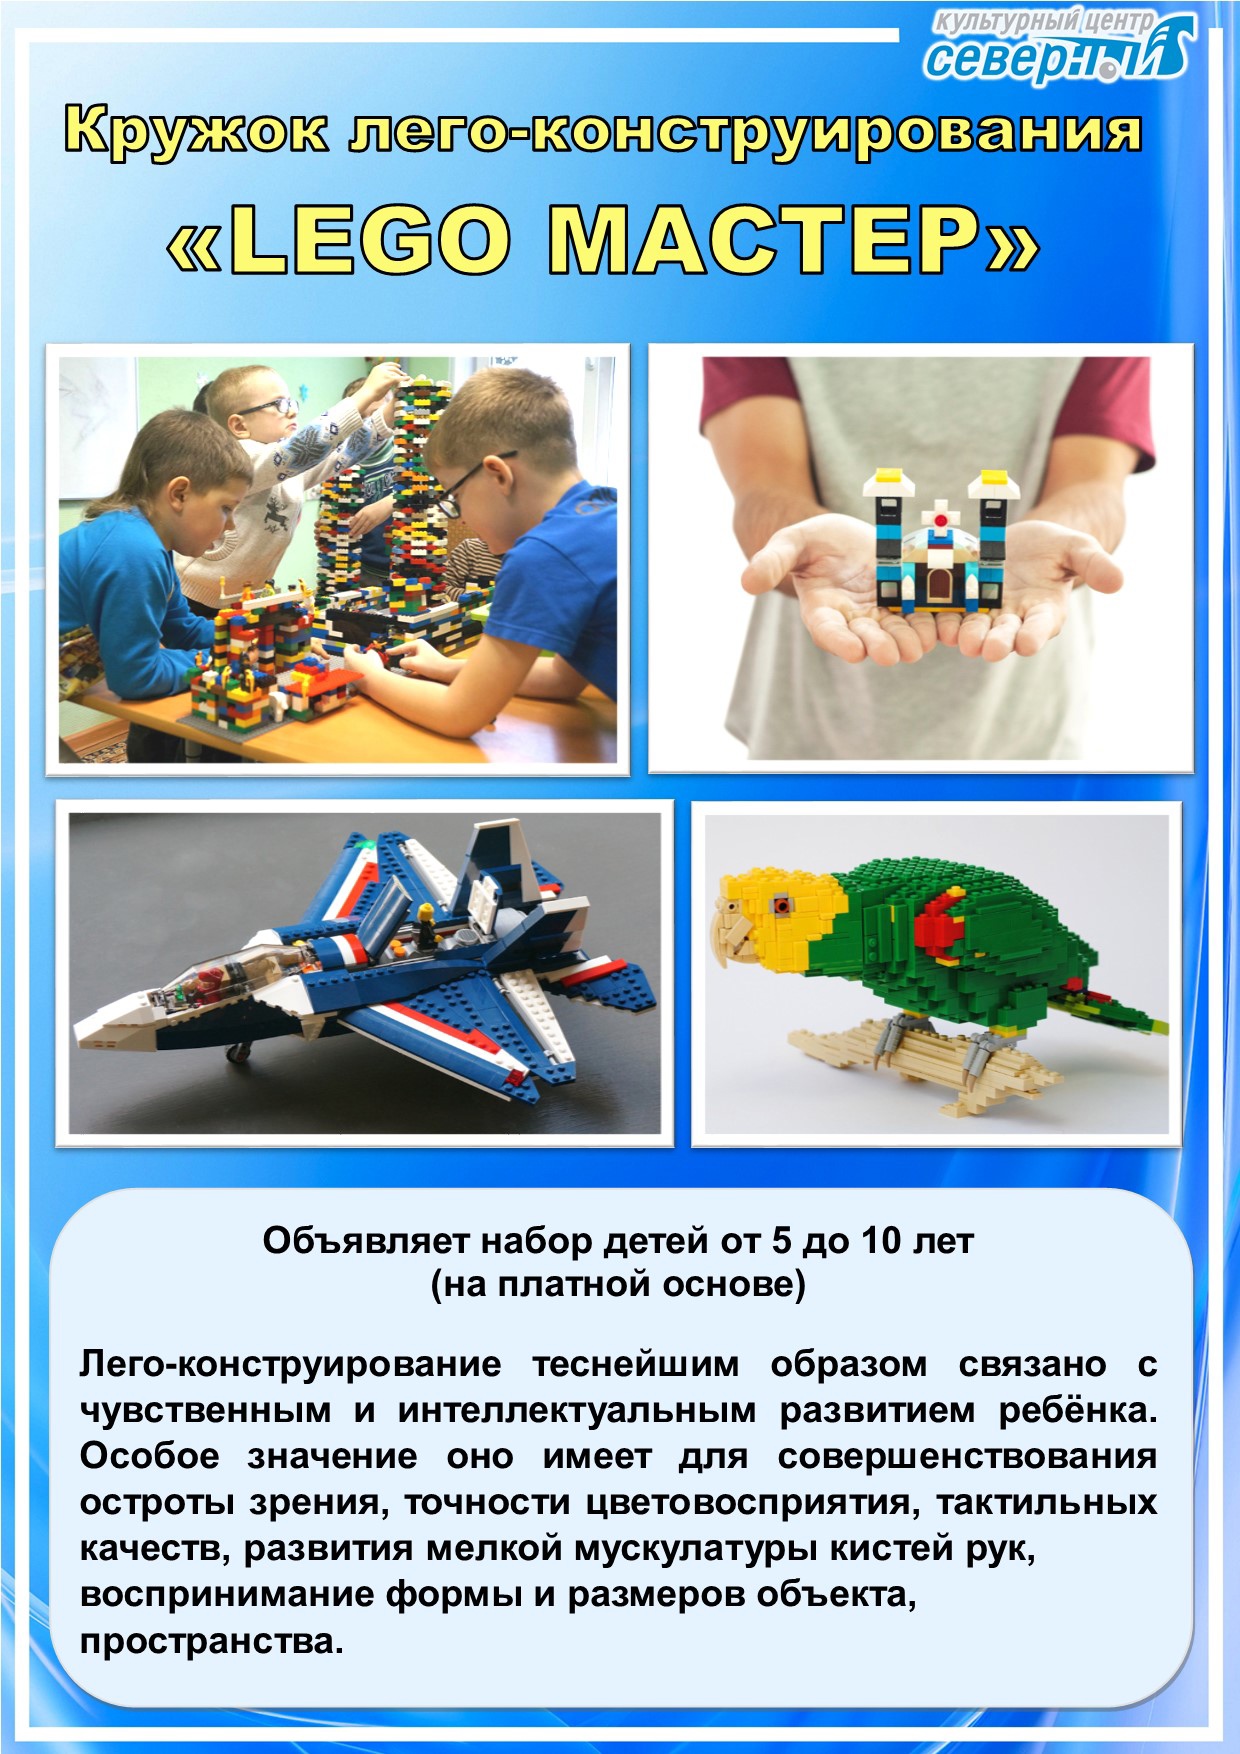 КРУЖОК ЛЕГО-КОНСТРУИРОВАНИЯ "LEGO МАСТЕР"